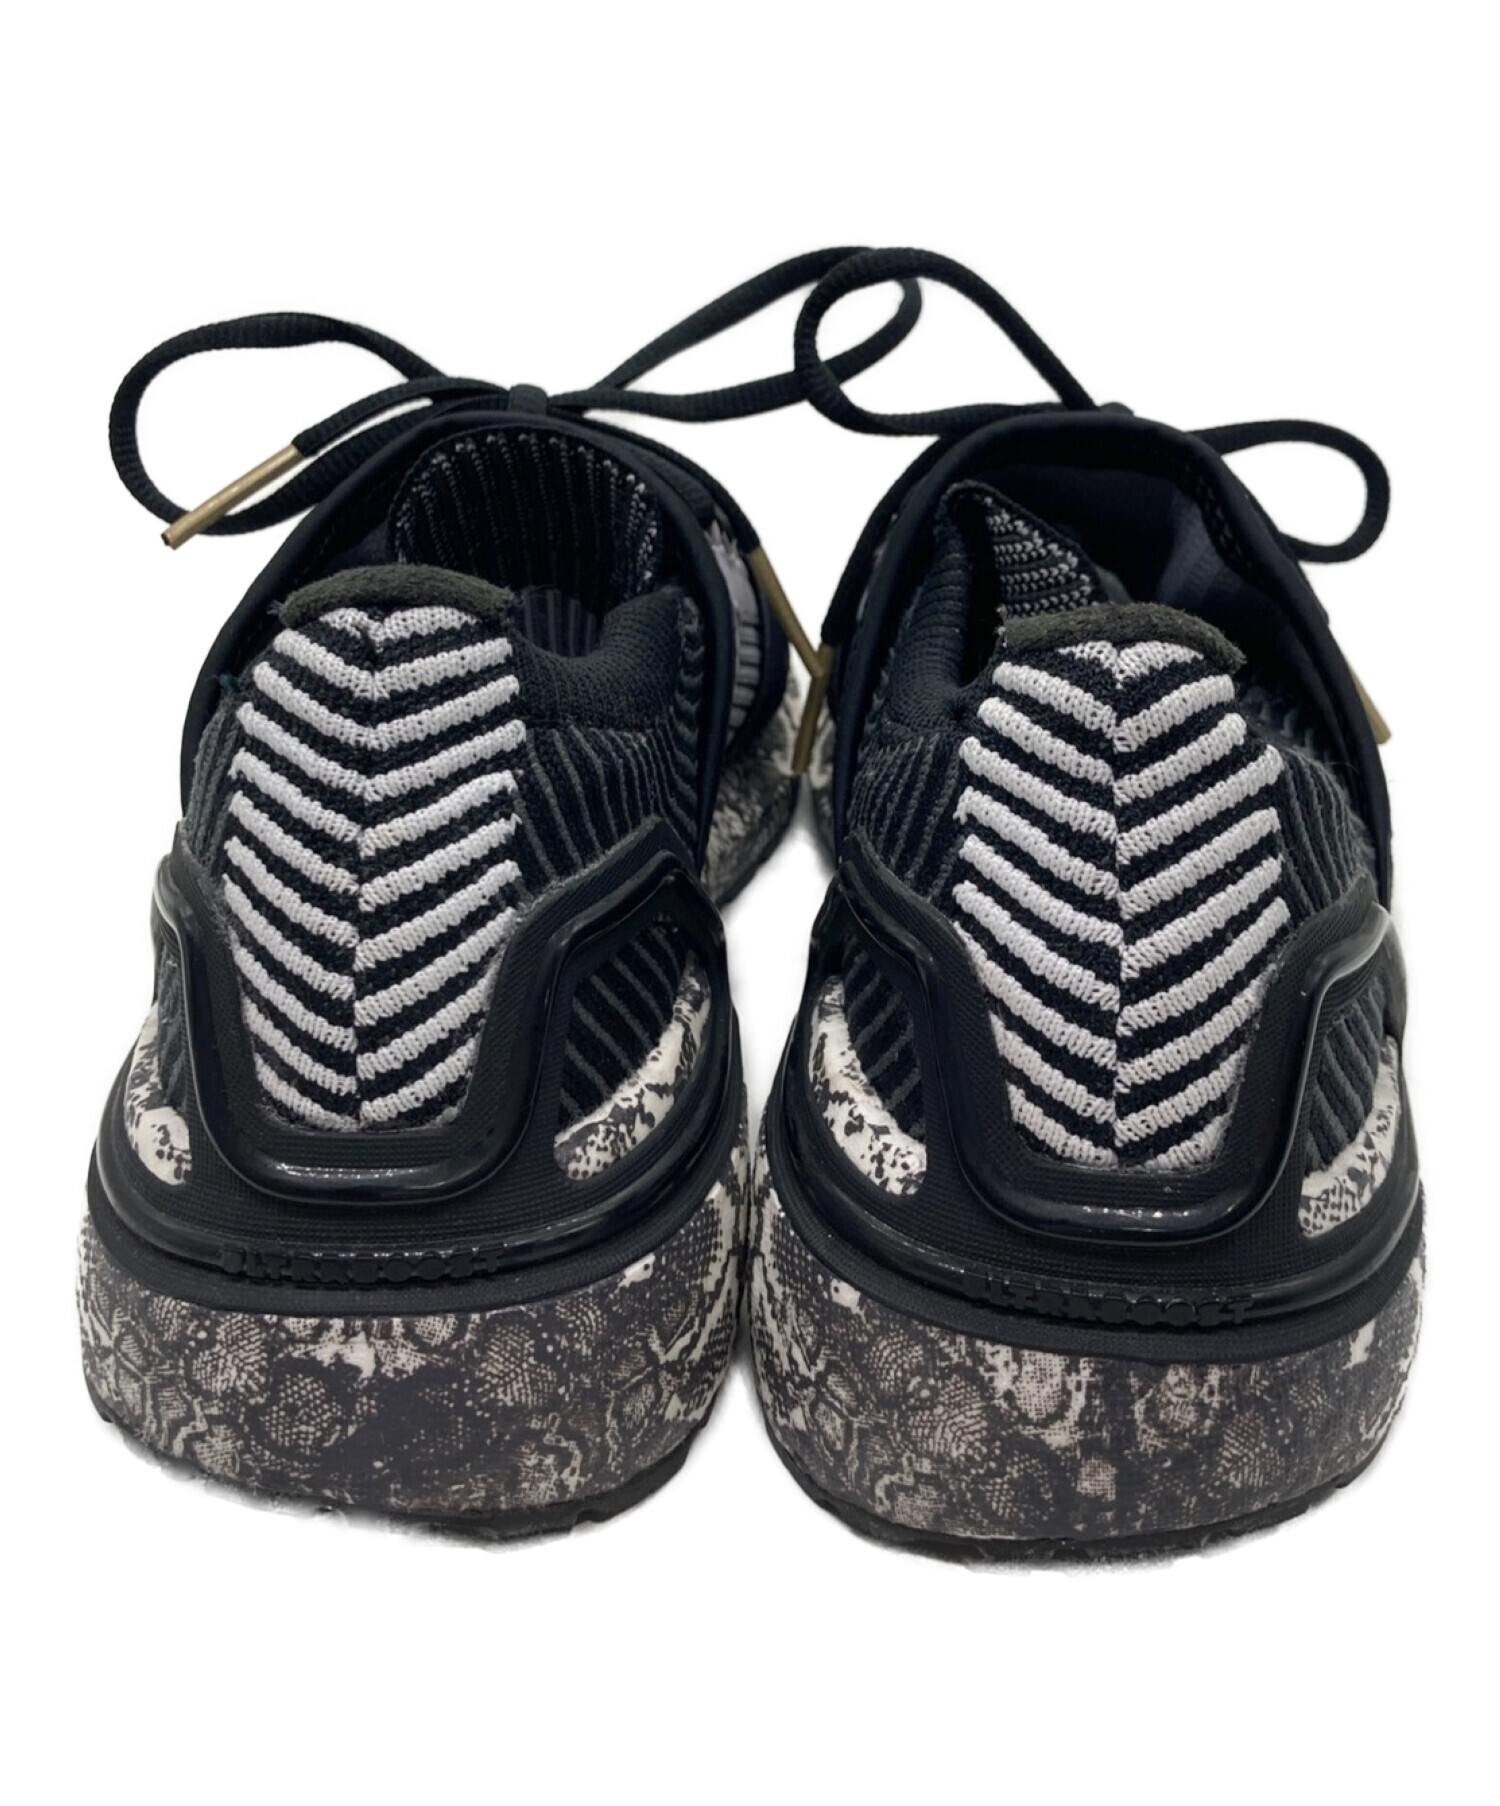 adidas (アディダス) STELLA McCARTNEY (ステラマッカートニー) Ultra Boost 20 ブラック サイズ:24.0㎝